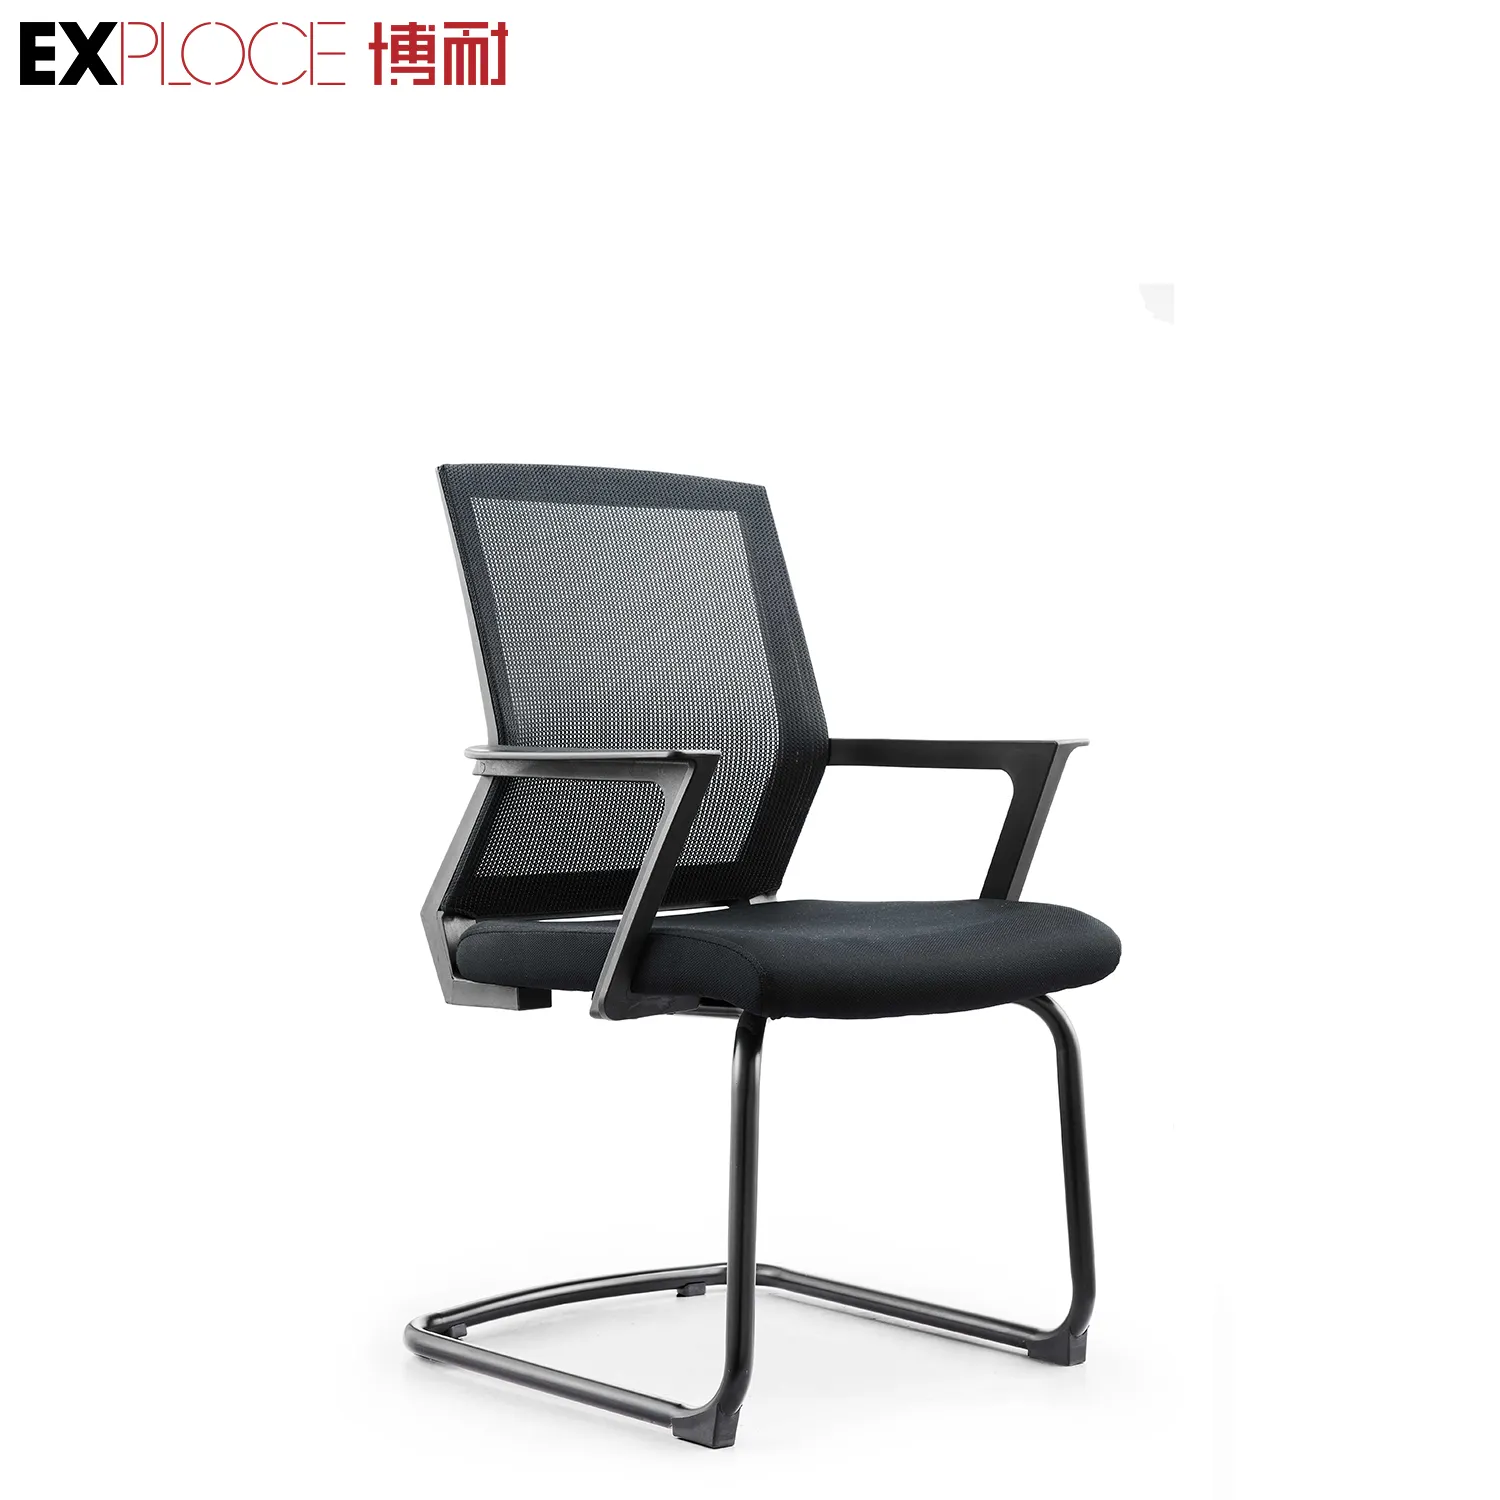 Venda quente móveis série de cadeira moderna, durável, fixo, apoio para braço em forma de l, perna, escritório, malha executiva, cadeira